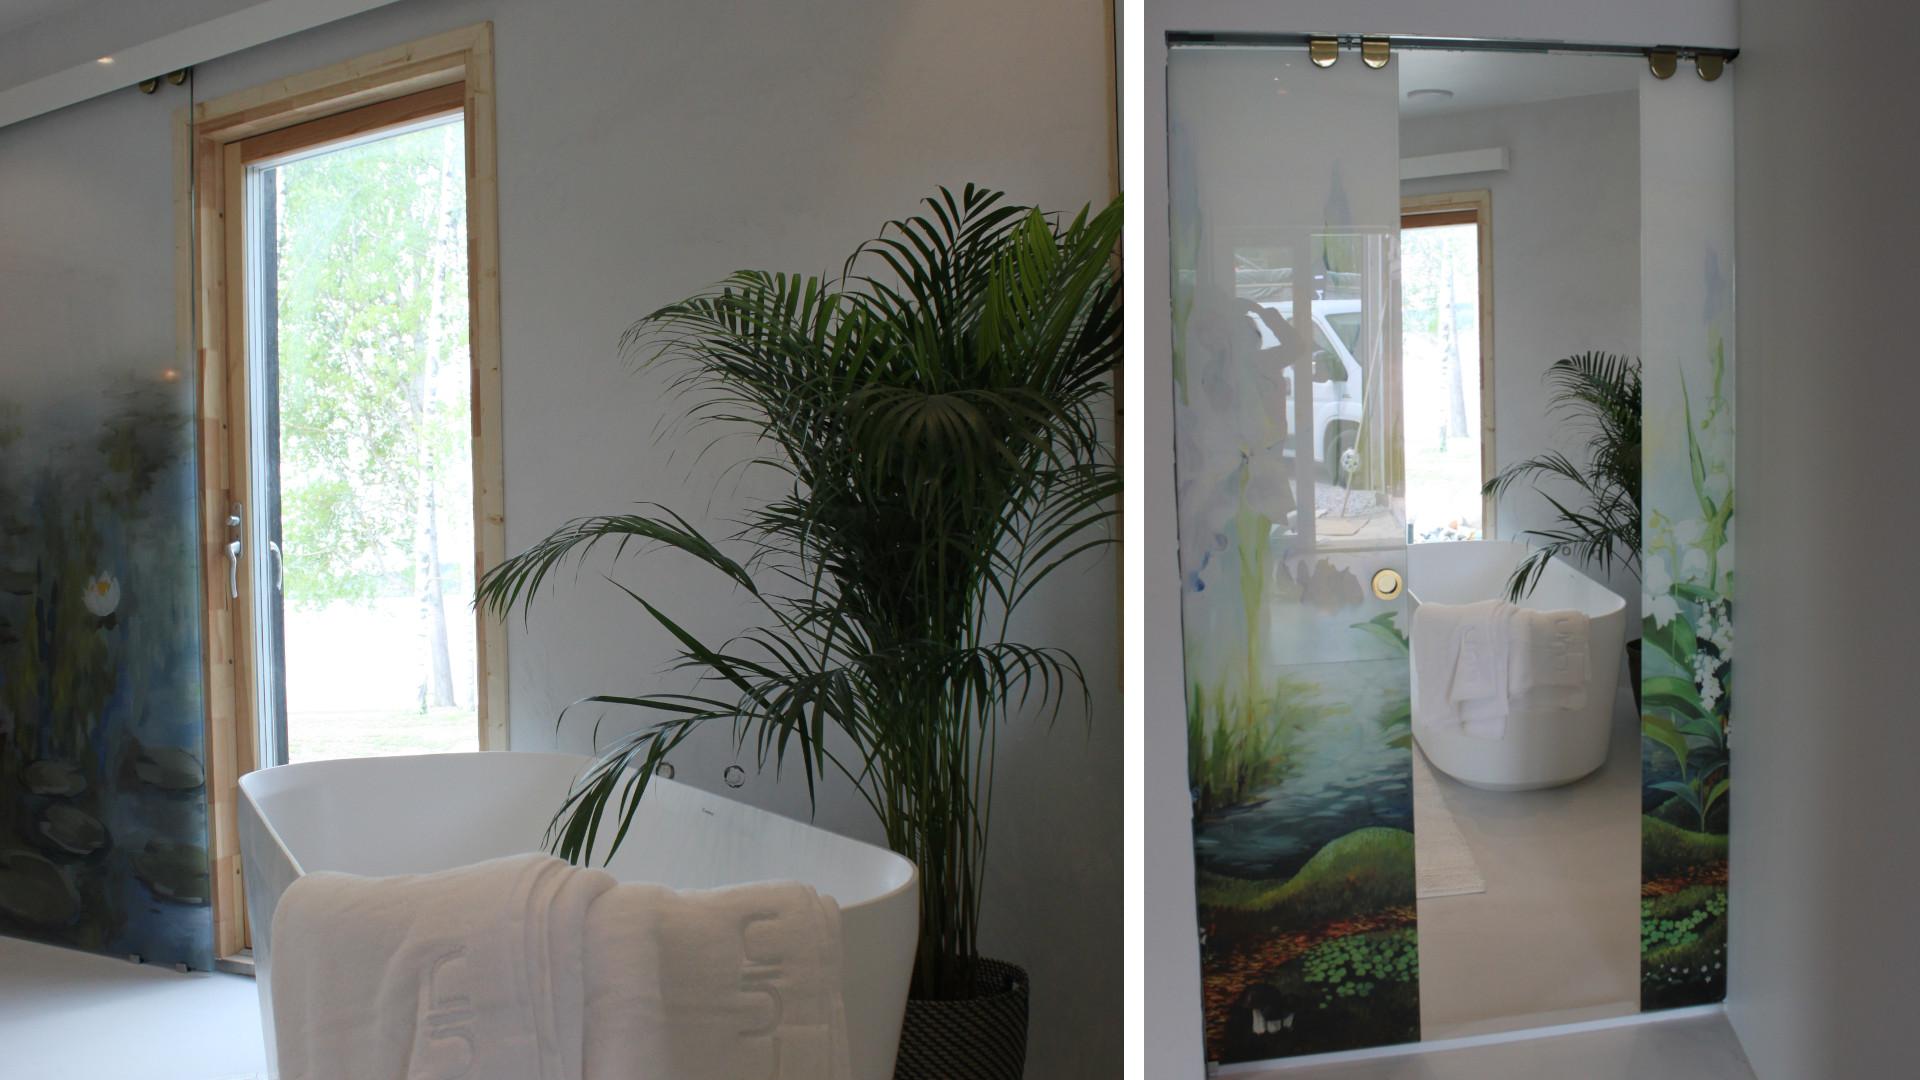 Liunen liukuovien luontoaiheinen taide tuo lisää kasvillisuutta Pyörre-talon kylpyhuoneeseen.